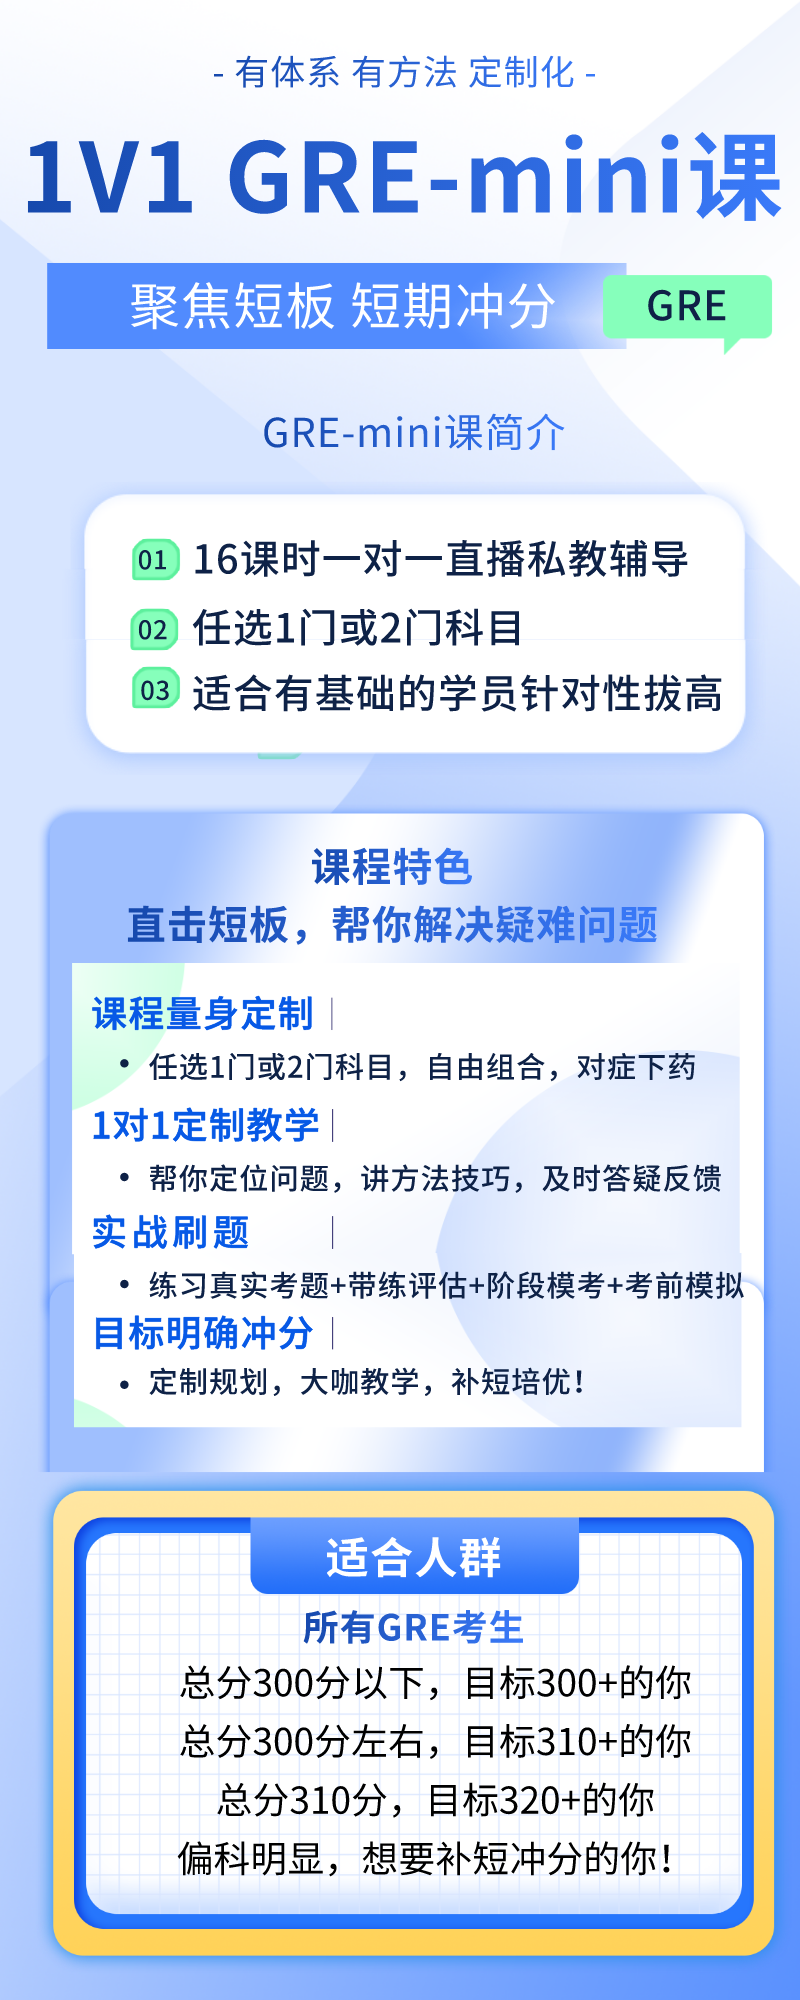 https://simg01.gaodunwangxiao.com/uploadfiles/product-center/202210/25/c80b1_20221025132838.png